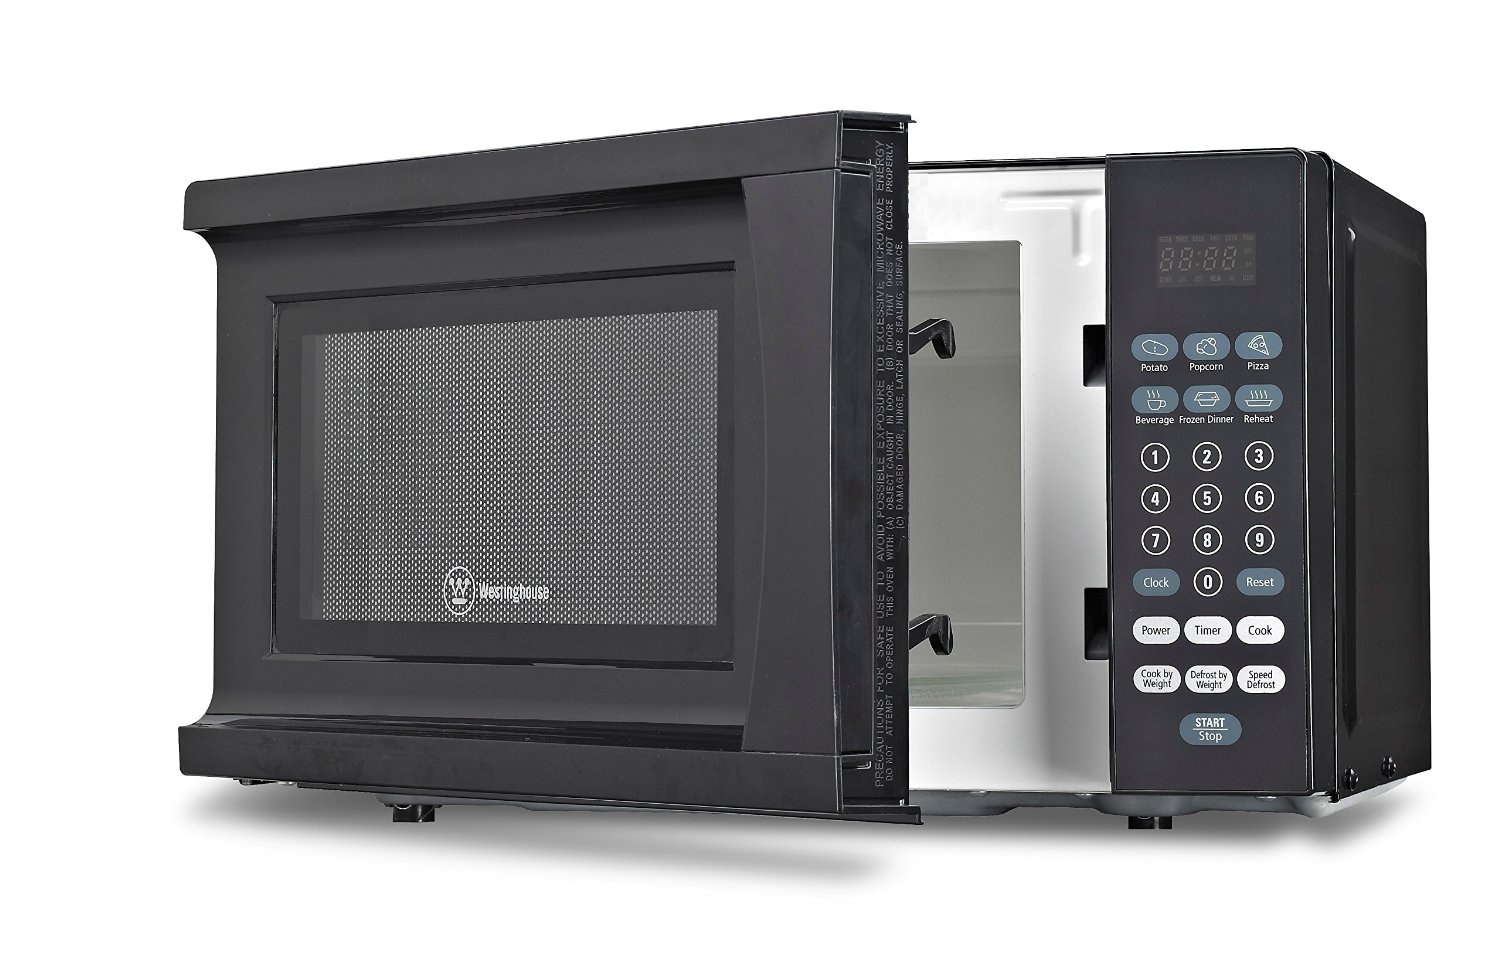 Westinghouse WCM770B Counter Top Microwave, 700-watt, Black